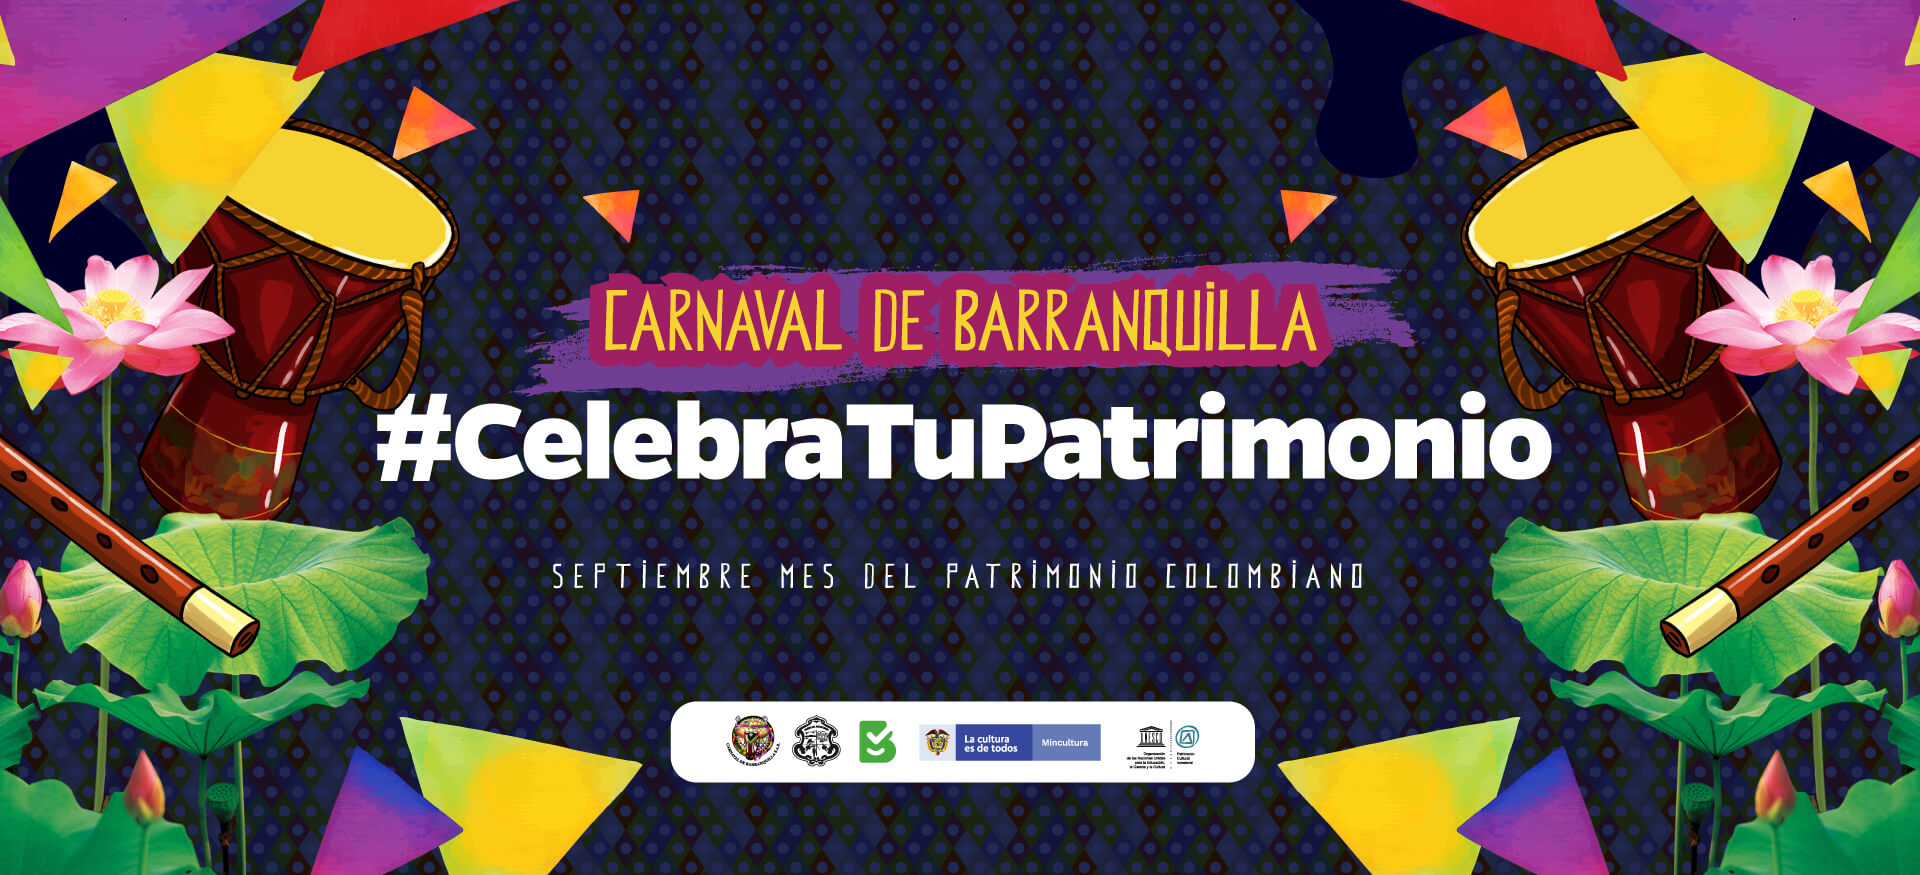 Carnaval celebra el Patrimonio Cultural de la Fiesta más grande de Colombia